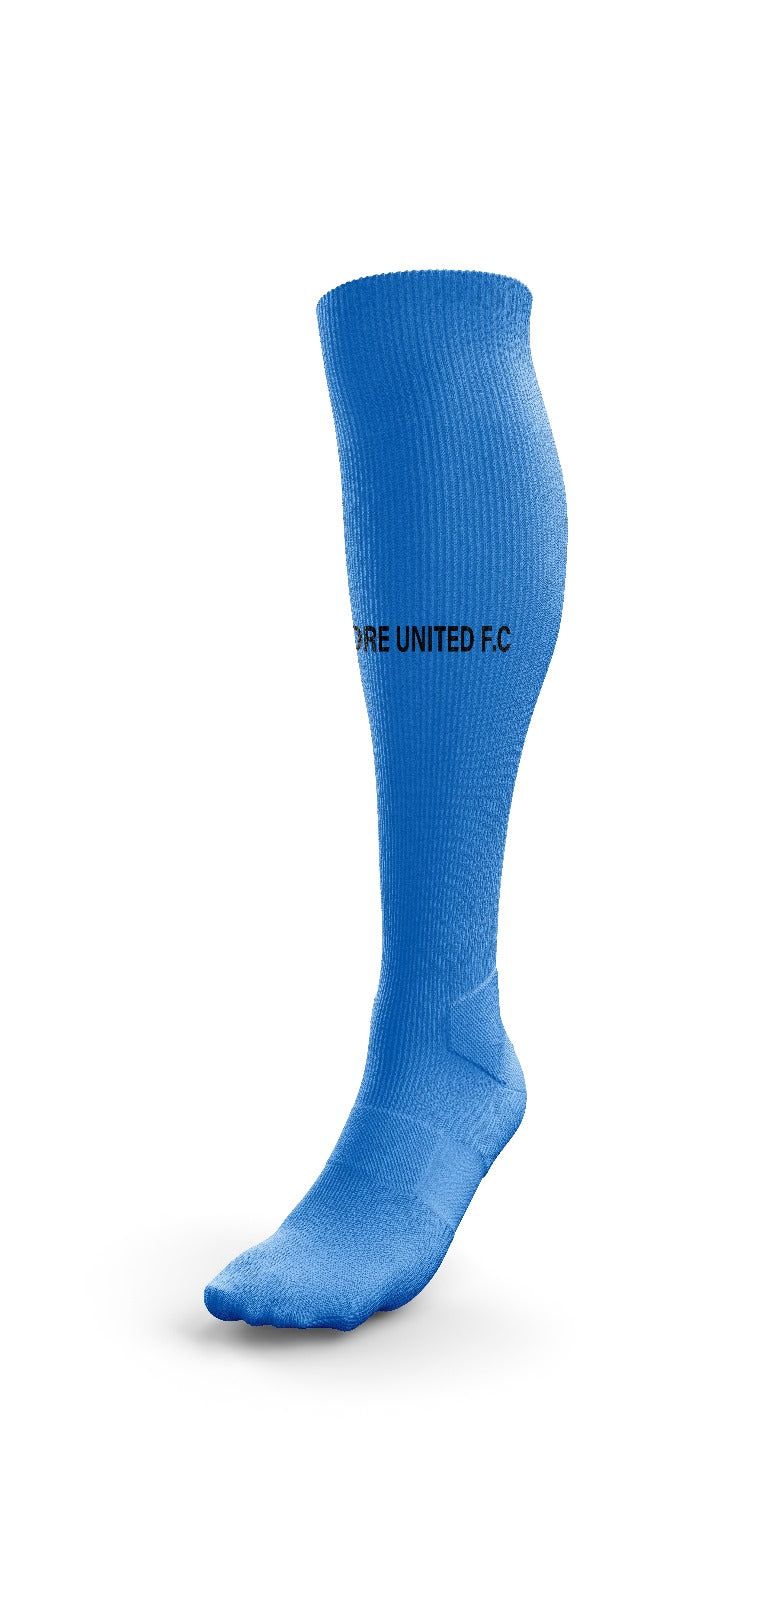 Moore United- Socks